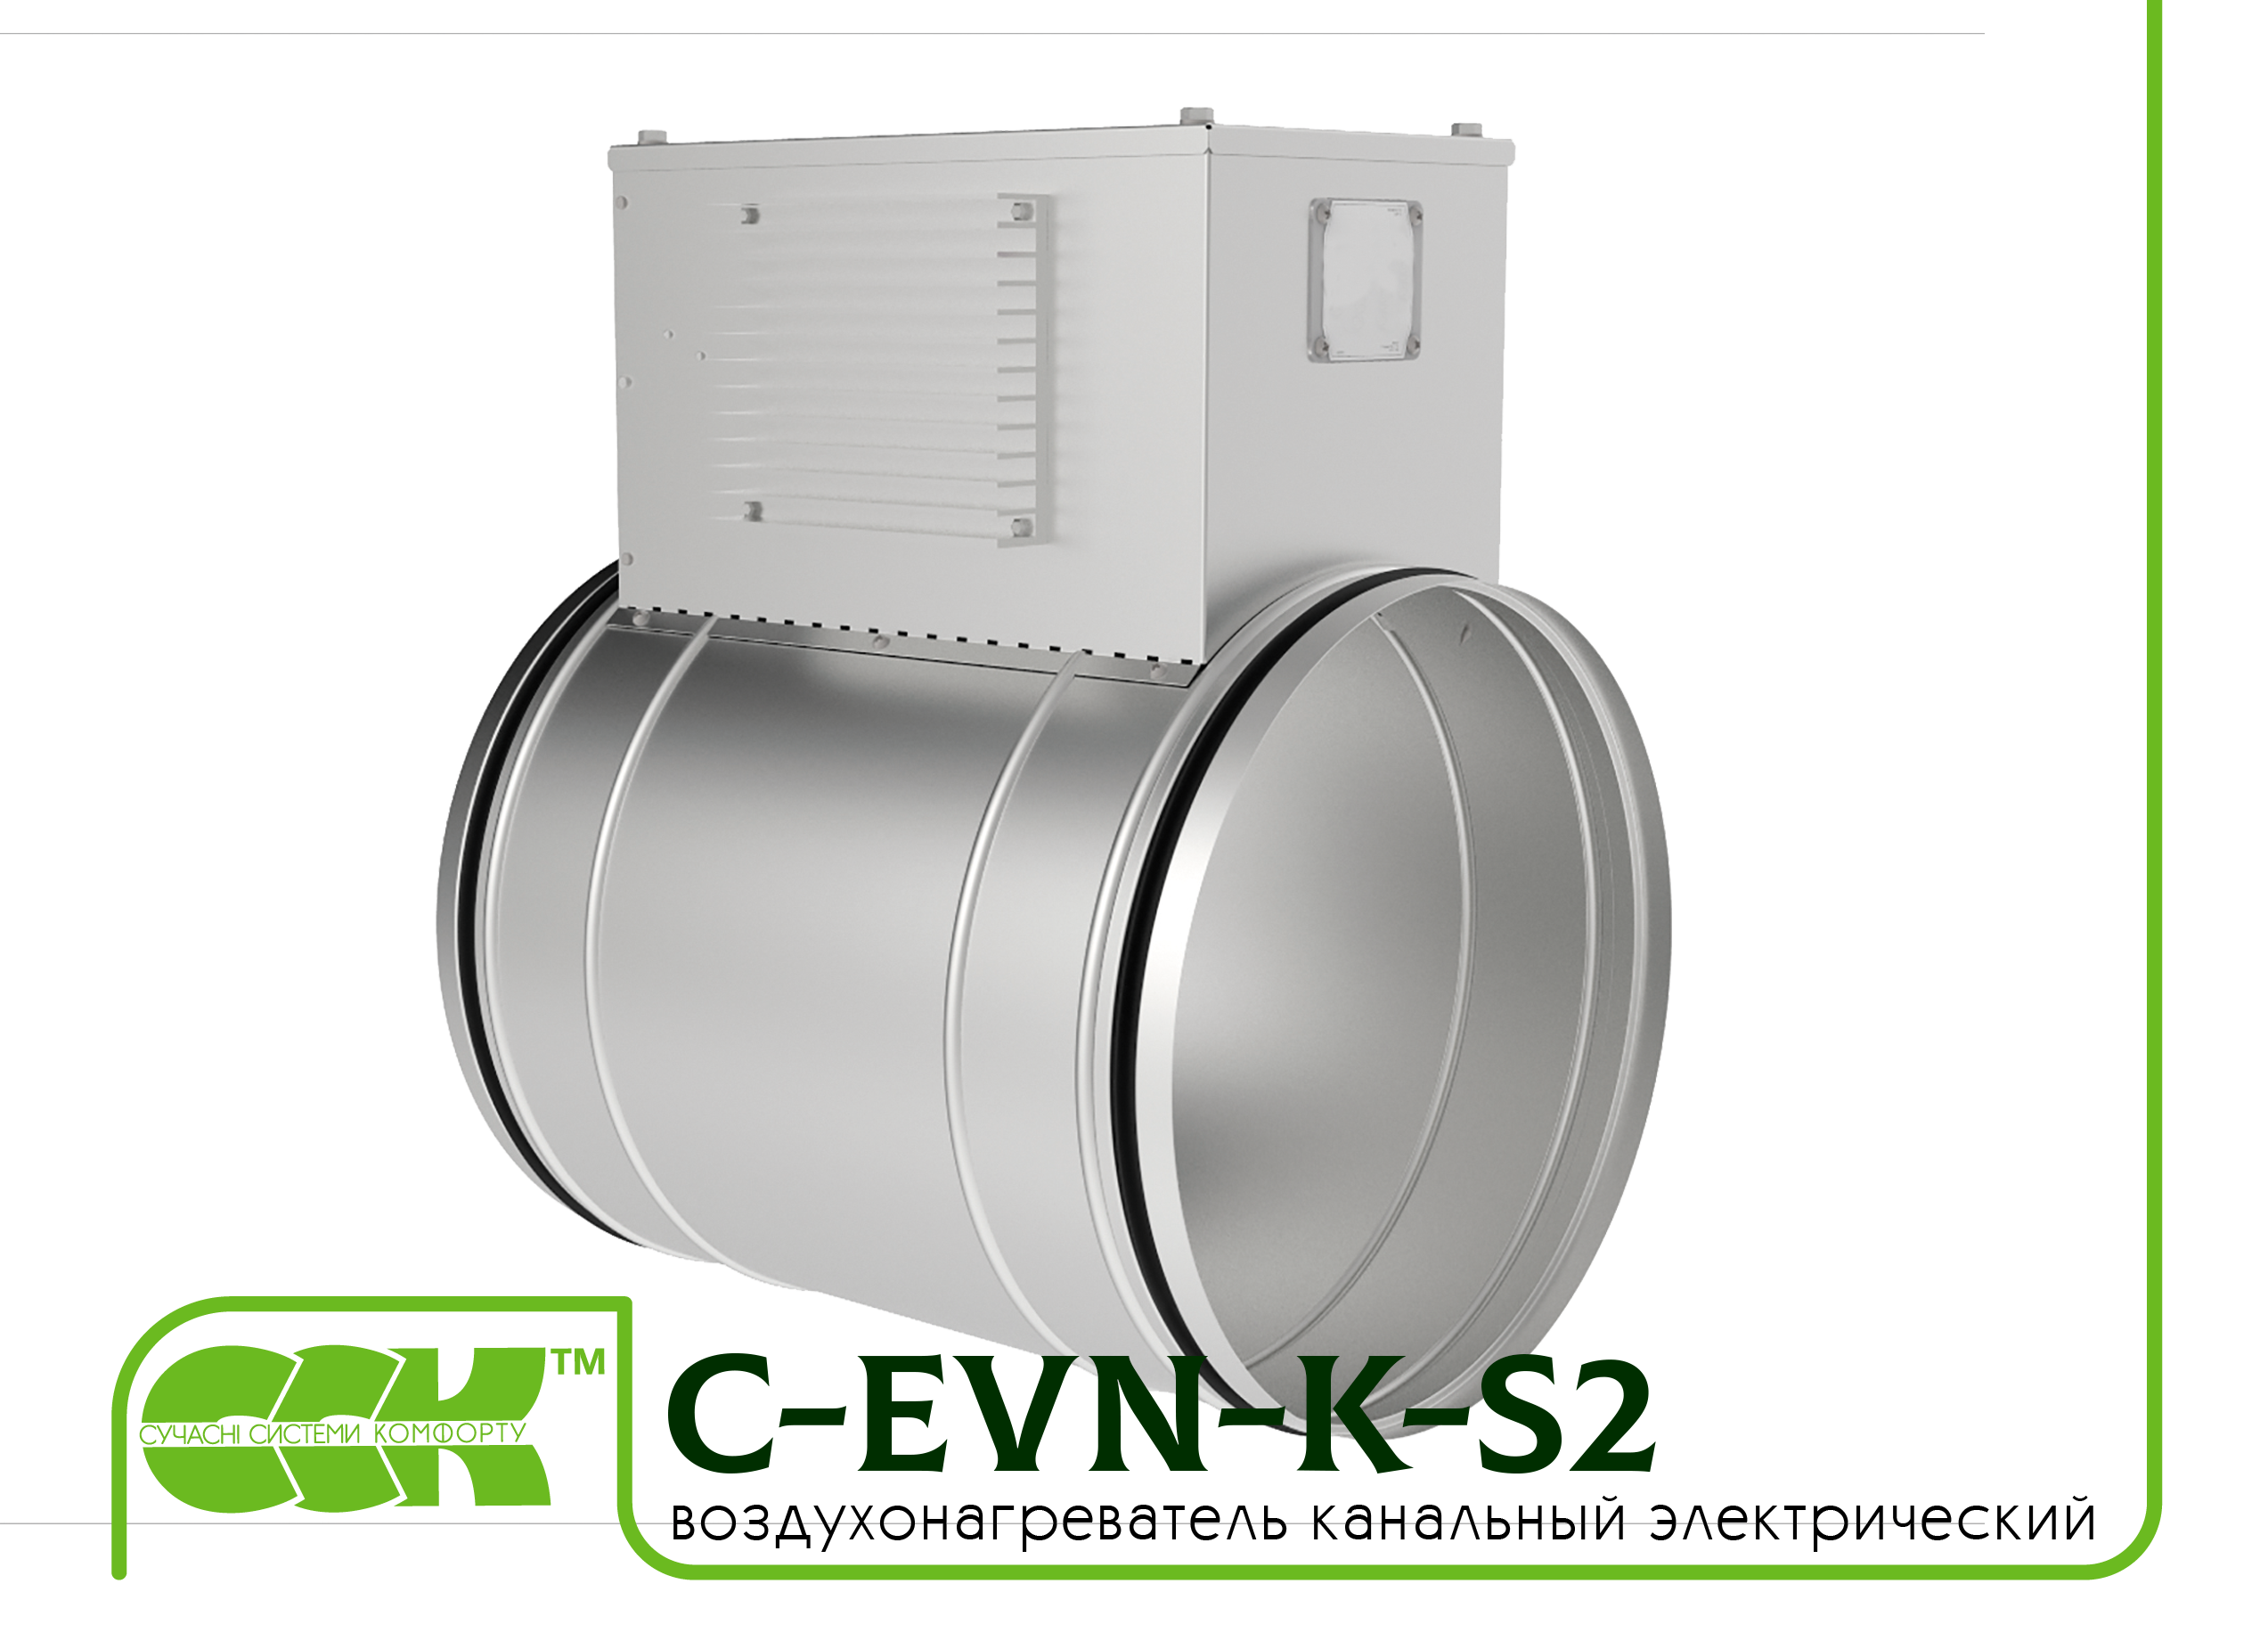 Воздухонагреватель канальный электрический для круглых каналов C-EVN-K-S2-100-0,6